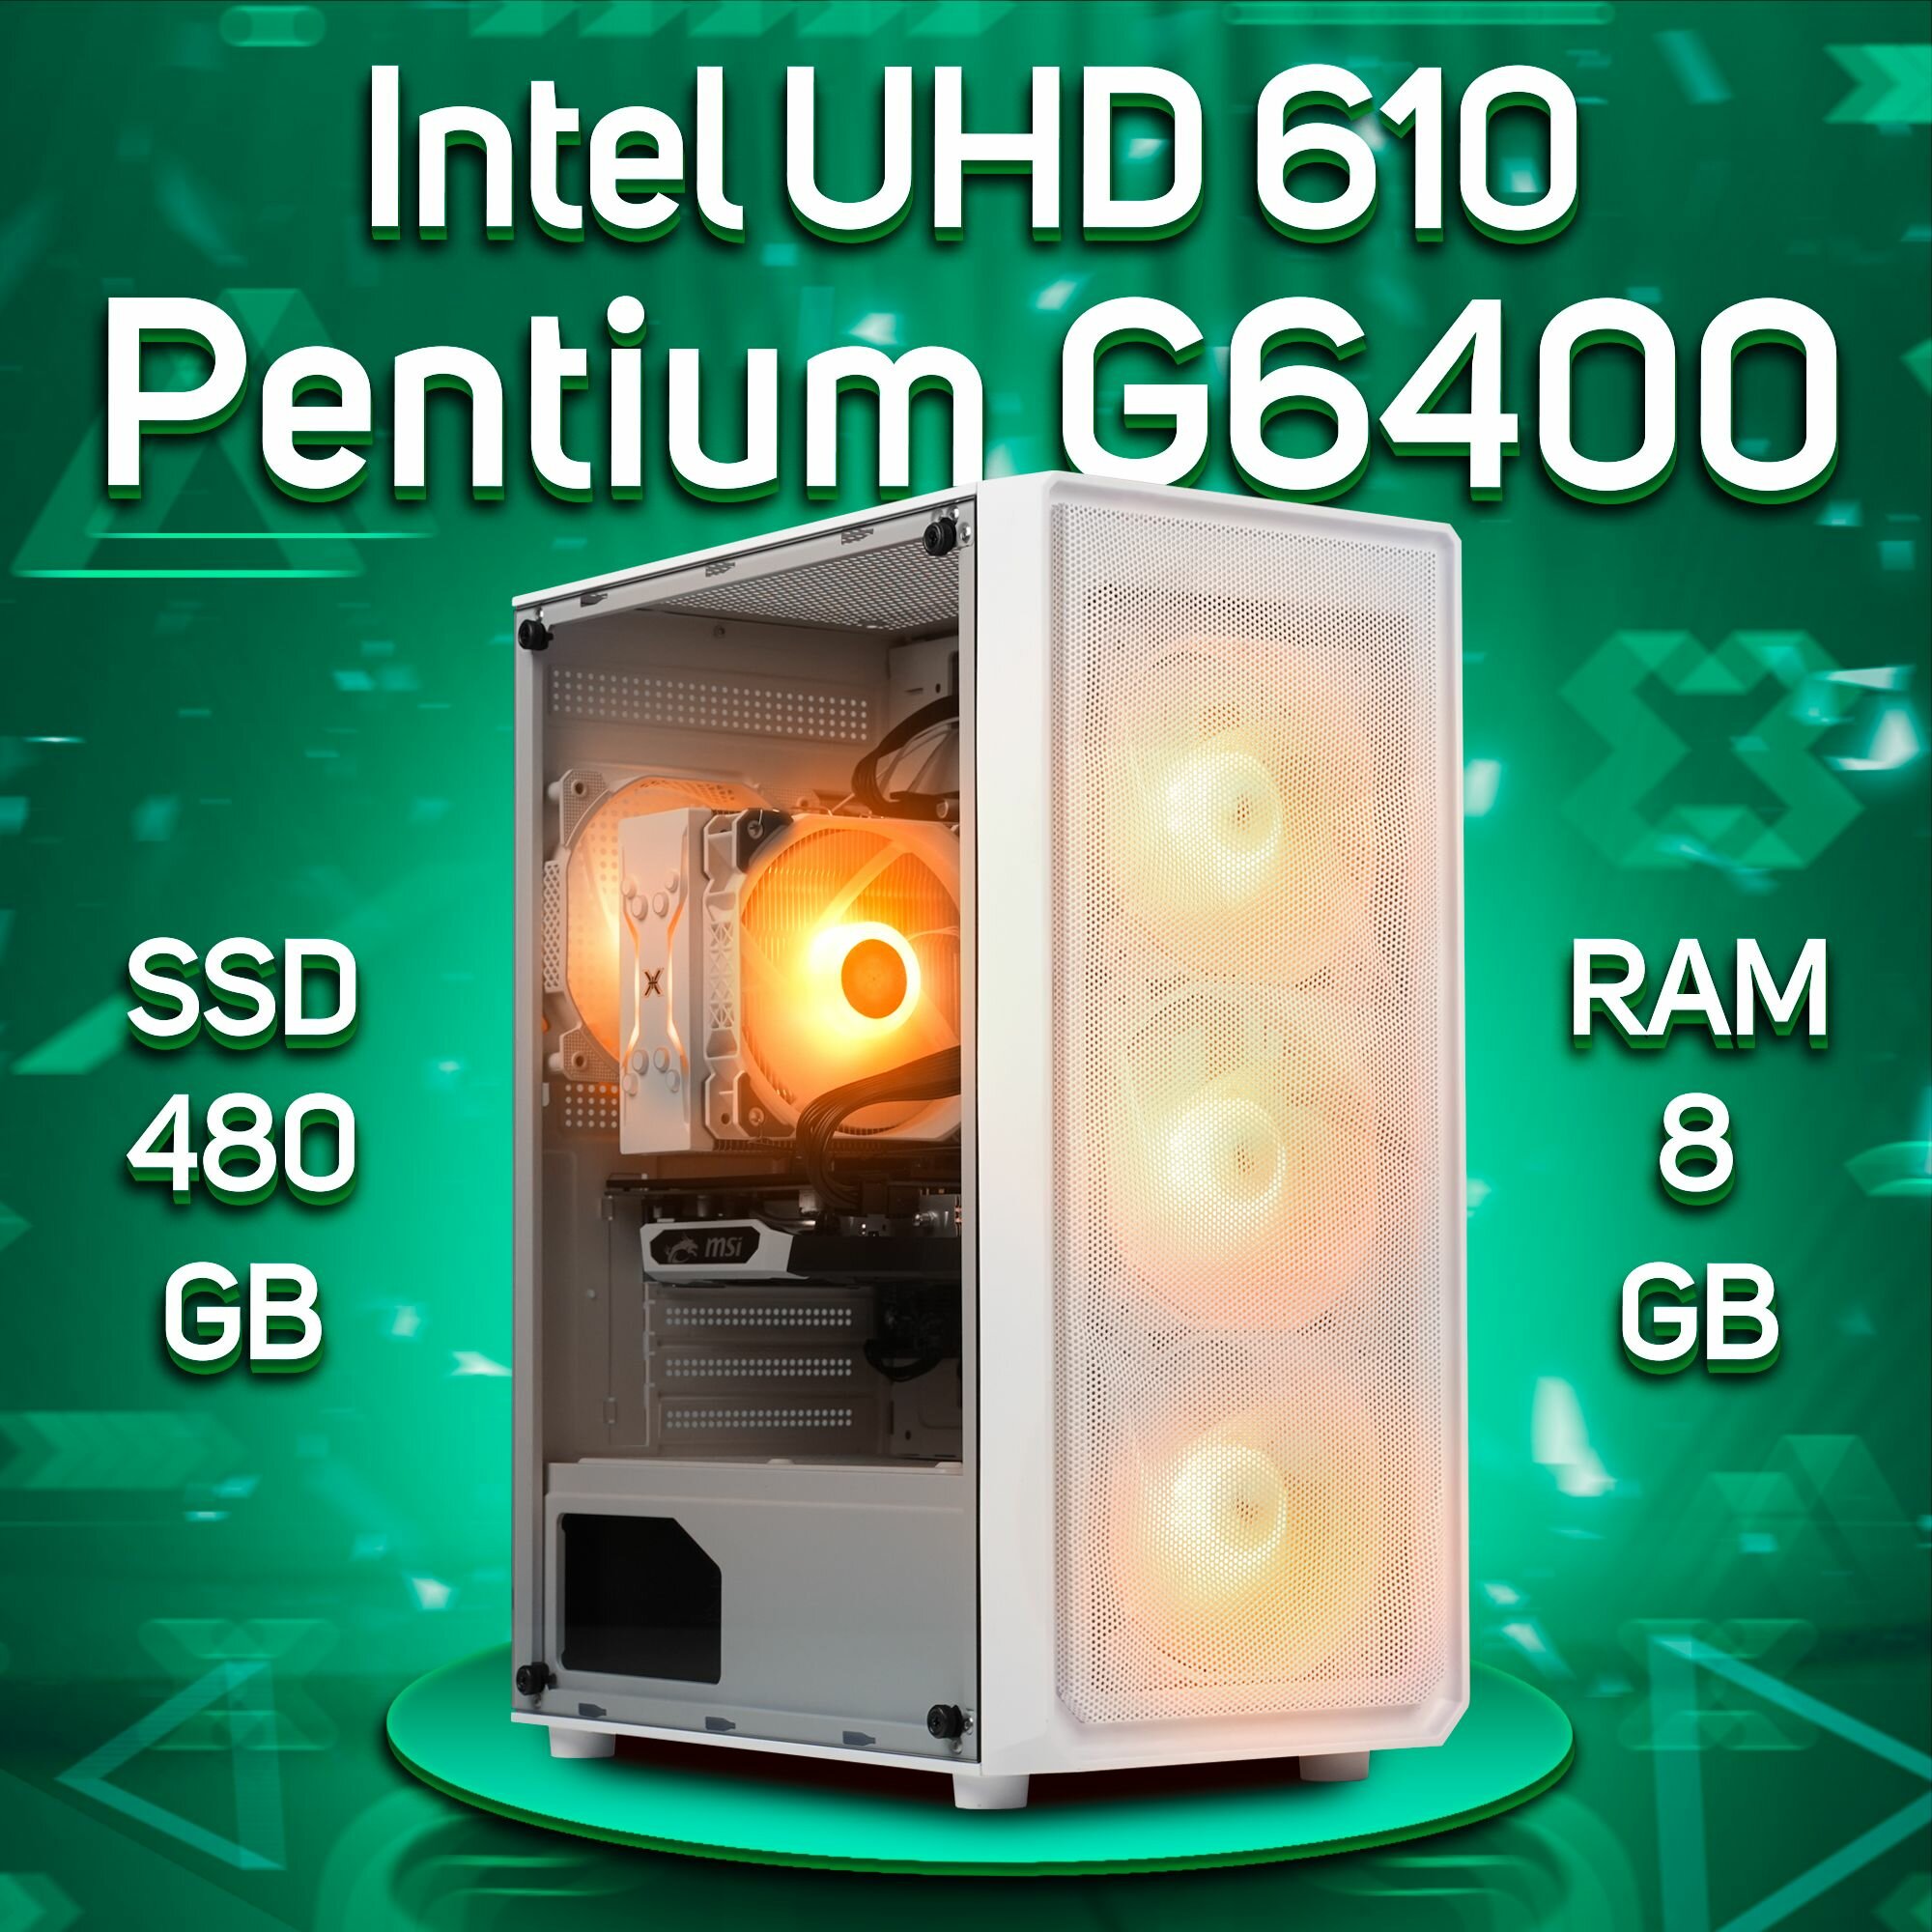 Компьютер Intel Pentium G6400 / Intel UHD Graphics 610, RAM 8GB, SSD 480GB